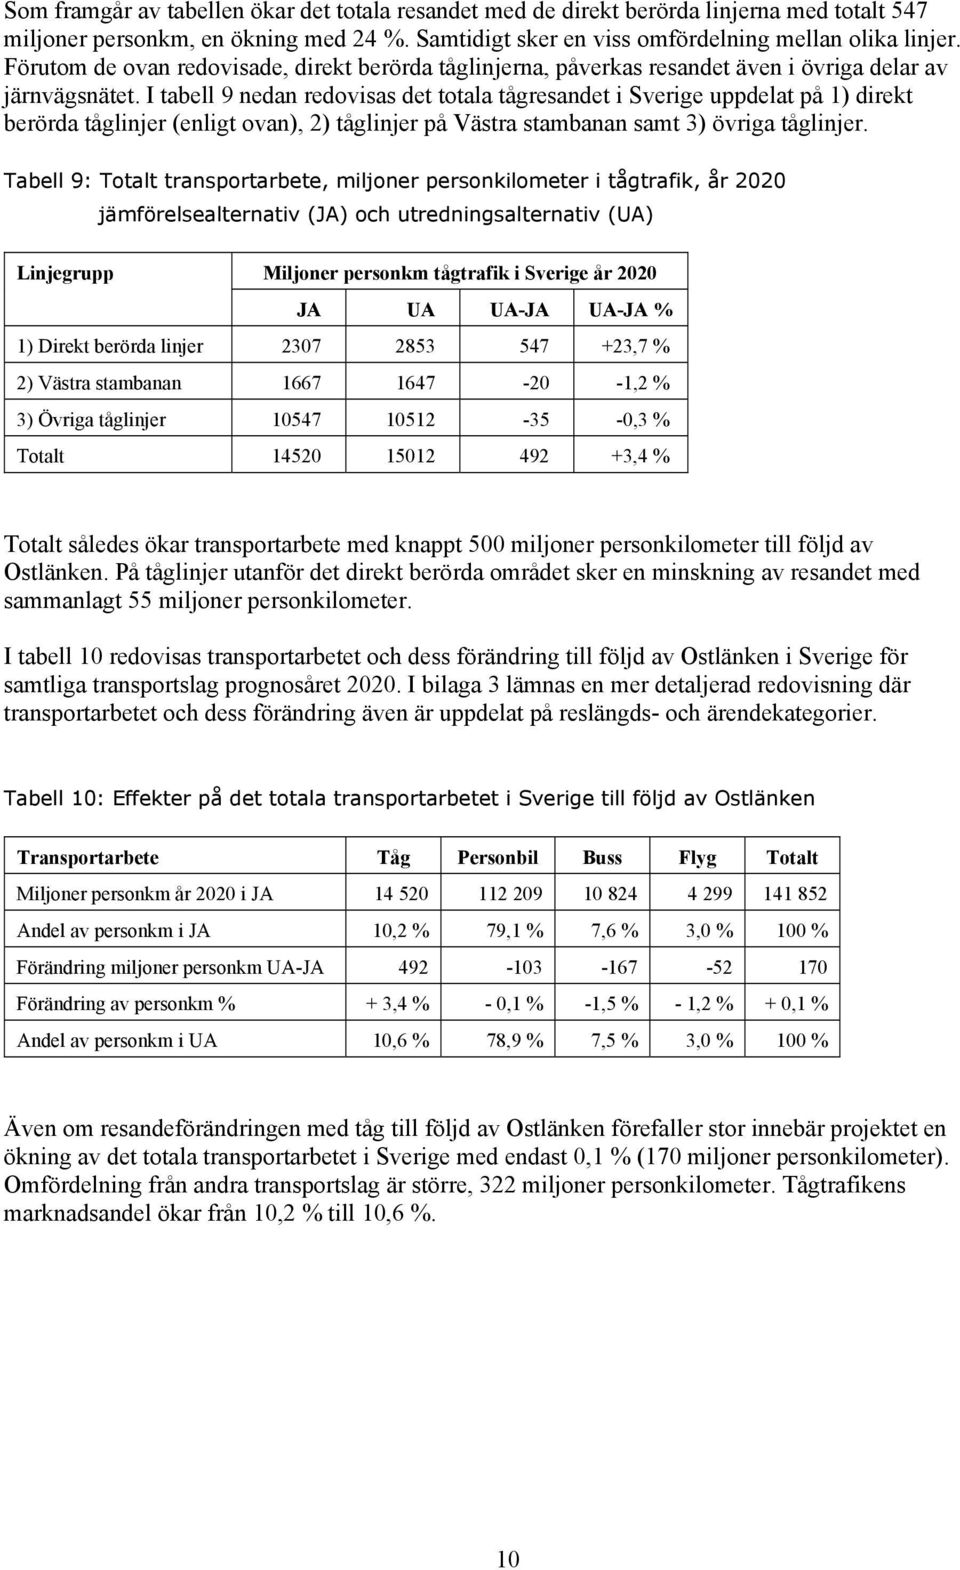 I tabell 9 nedan redovisas det totala tågresandet i Sverige uppdelat på 1) direkt berörda tåglinjer (enligt ovan), 2) tåglinjer på Västra stambanan samt 3) övriga tåglinjer.